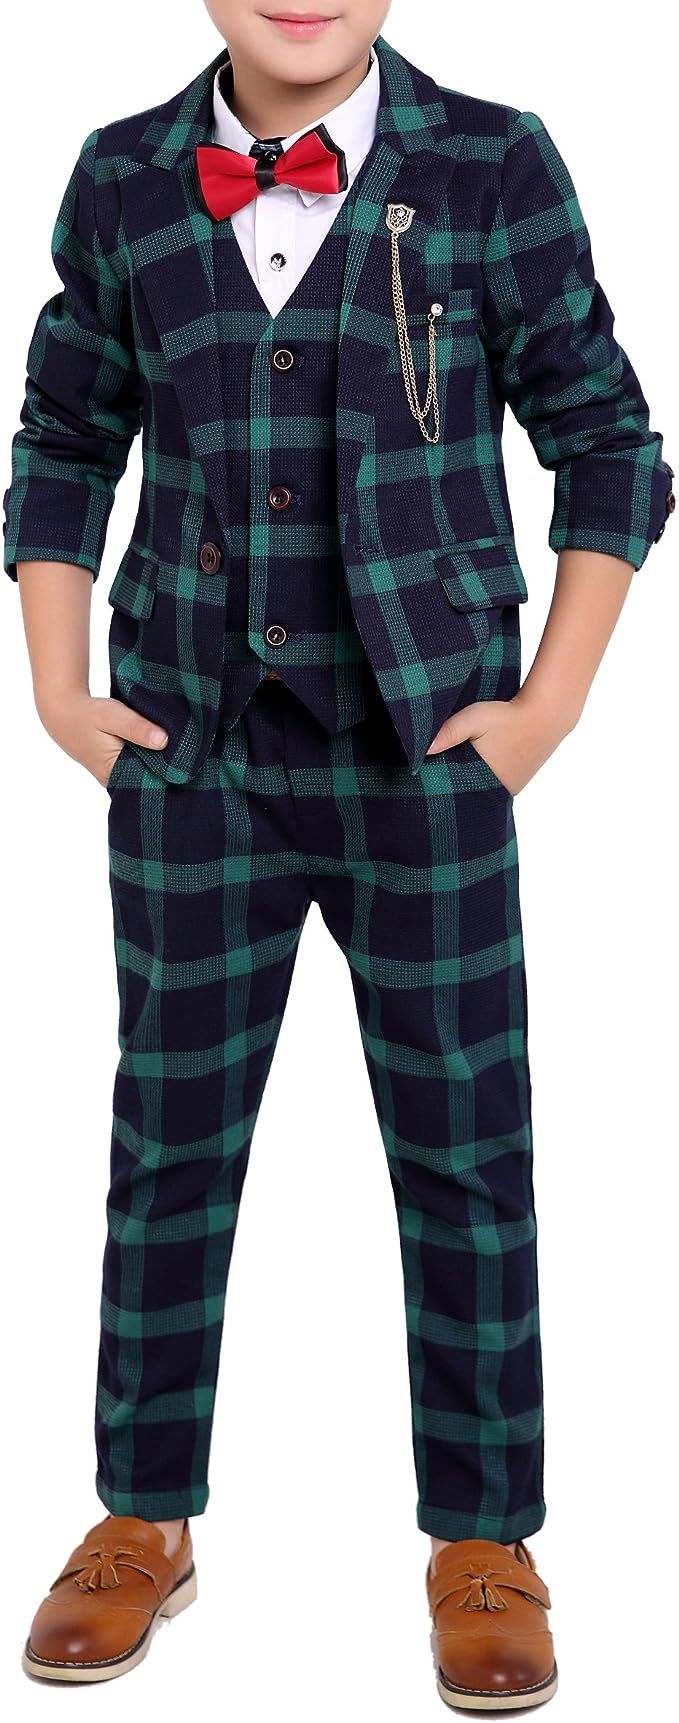 YUFAN Boys Black Red Green 3 Colors Plaid Suit 3 Pieces Jacket Vest Pants Size 2T - 10 | Amazon (US)